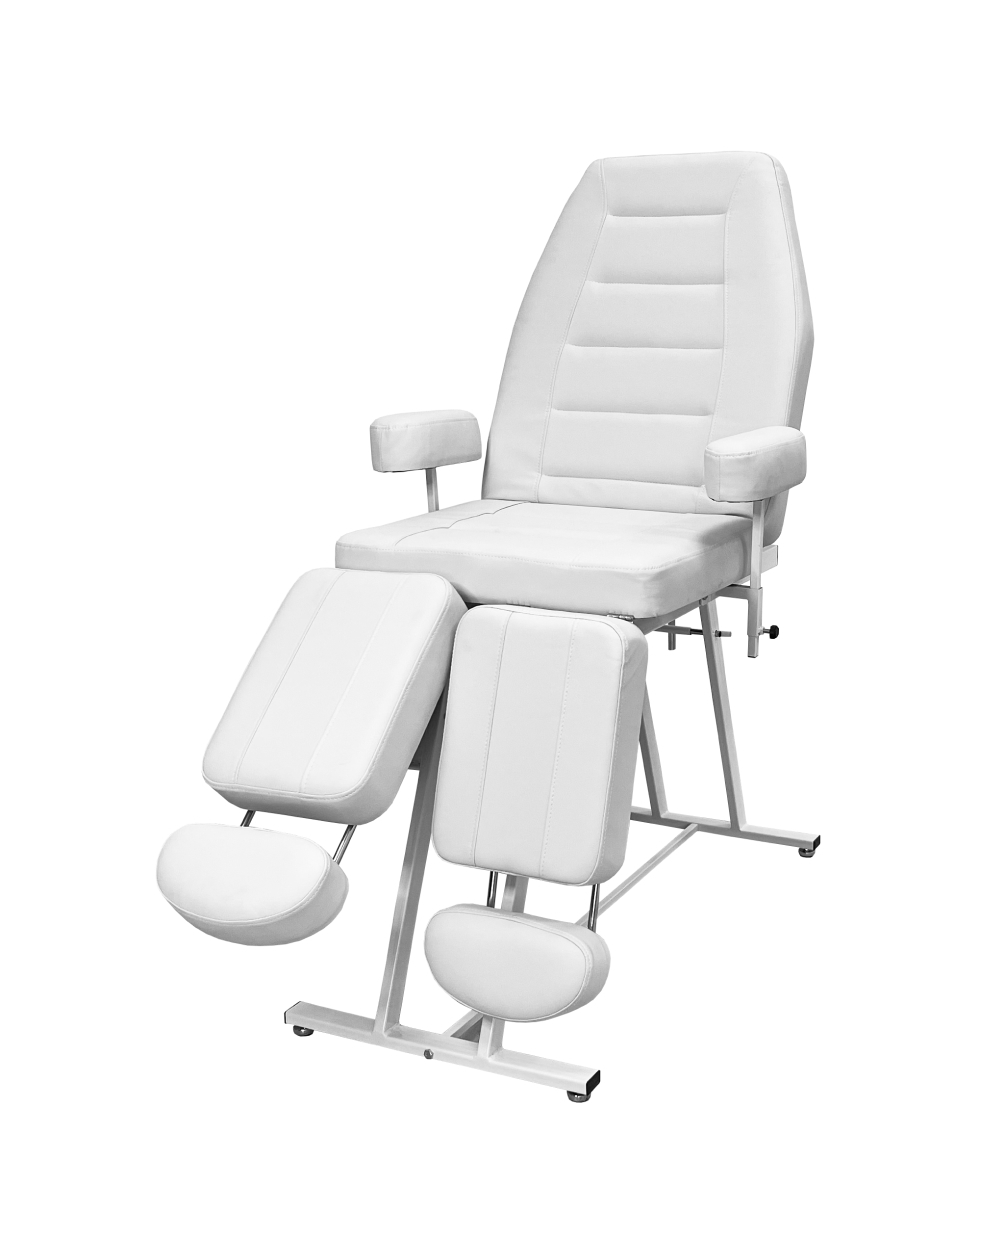 Педикюрное кресло косметологическое Нева - белое